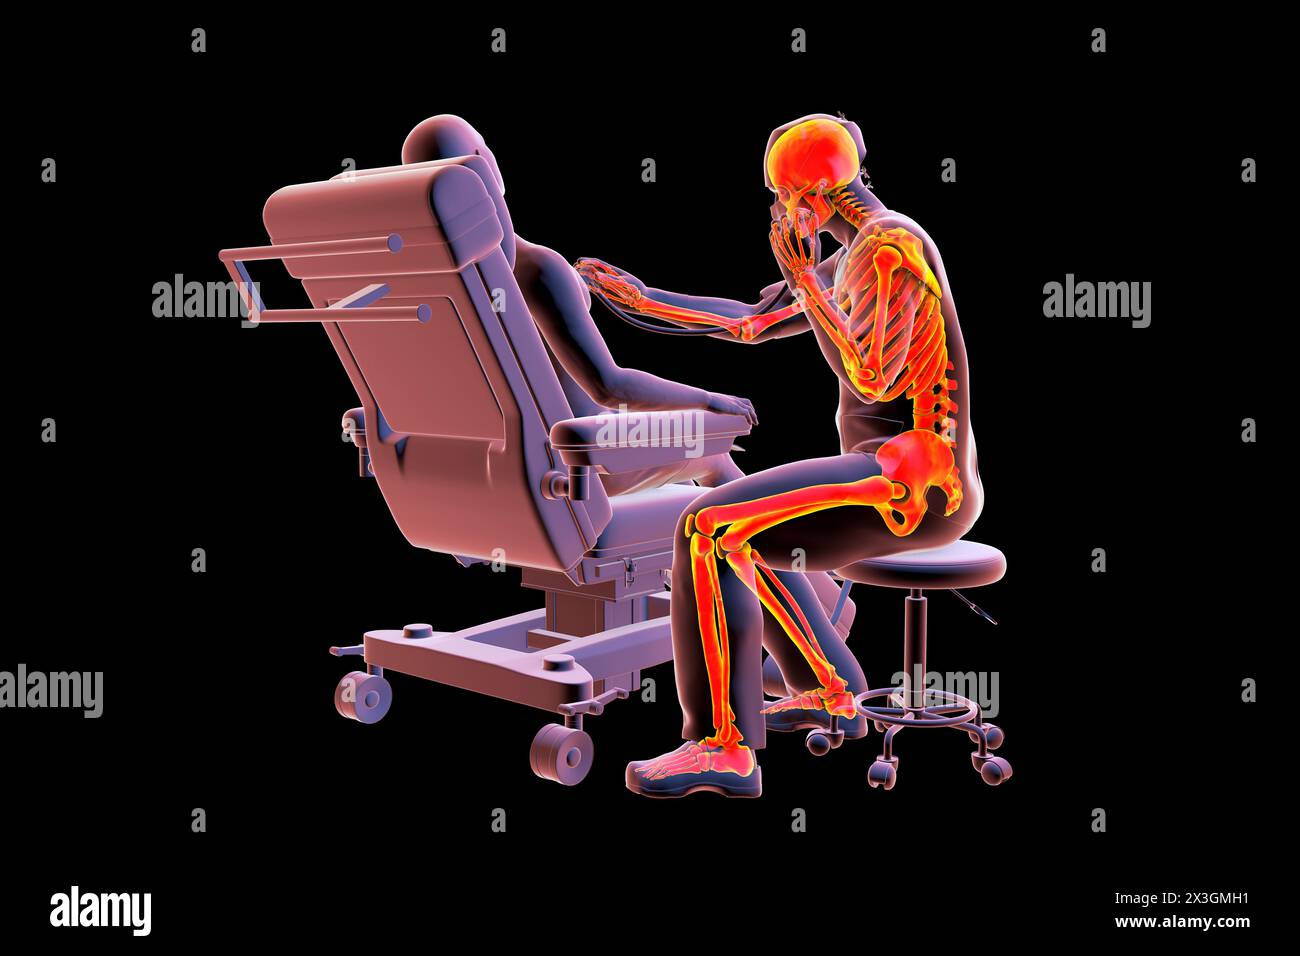 Abbildung eines medizinischen Fachpersonals mit einem hervorgehobenen Skelett, das Skeletterkrankungen symbolisiert, die mit dem medizinischen Fachpersonal verbunden sind. Stockfoto